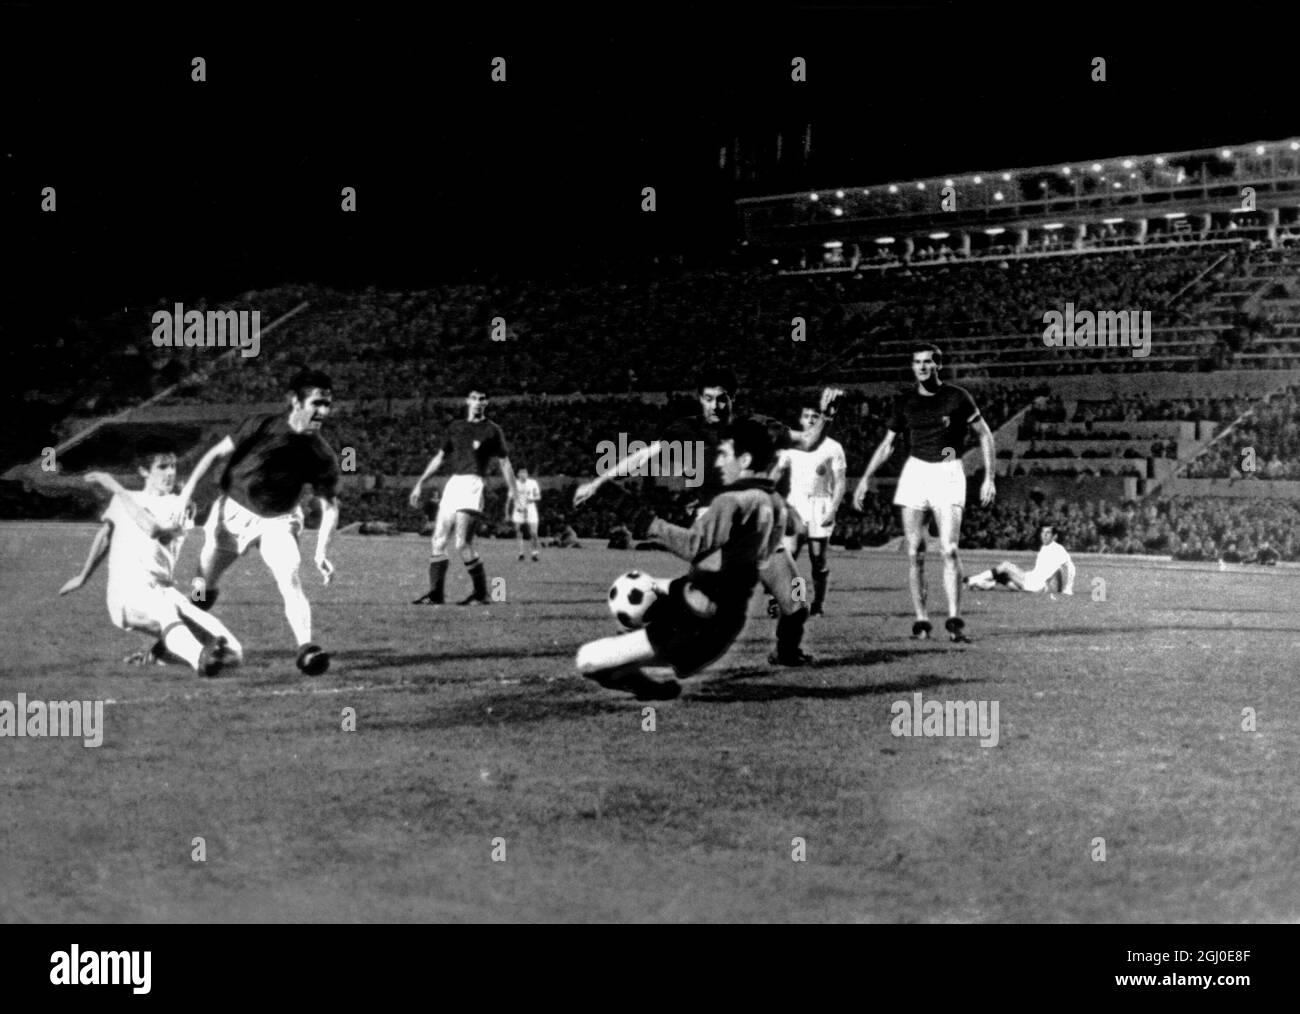 1968 Europameisterschaften - Aktion während der Wiederholung der Europameisterschaft zwischen Italien (dunkle Shirts) und Jugoslawien in Rom. Italien erzielte in der ersten halben Stunde zwei Tore und gewann die Meisterschaft mit zwei Toren auf Null. Das erste Spiel, das am Samstag gespielt wurde, führte zu einem Unentschieden von 1-1, nachdem zusätzliche Zeit gespielt worden war. Juni 1968 Stockfoto